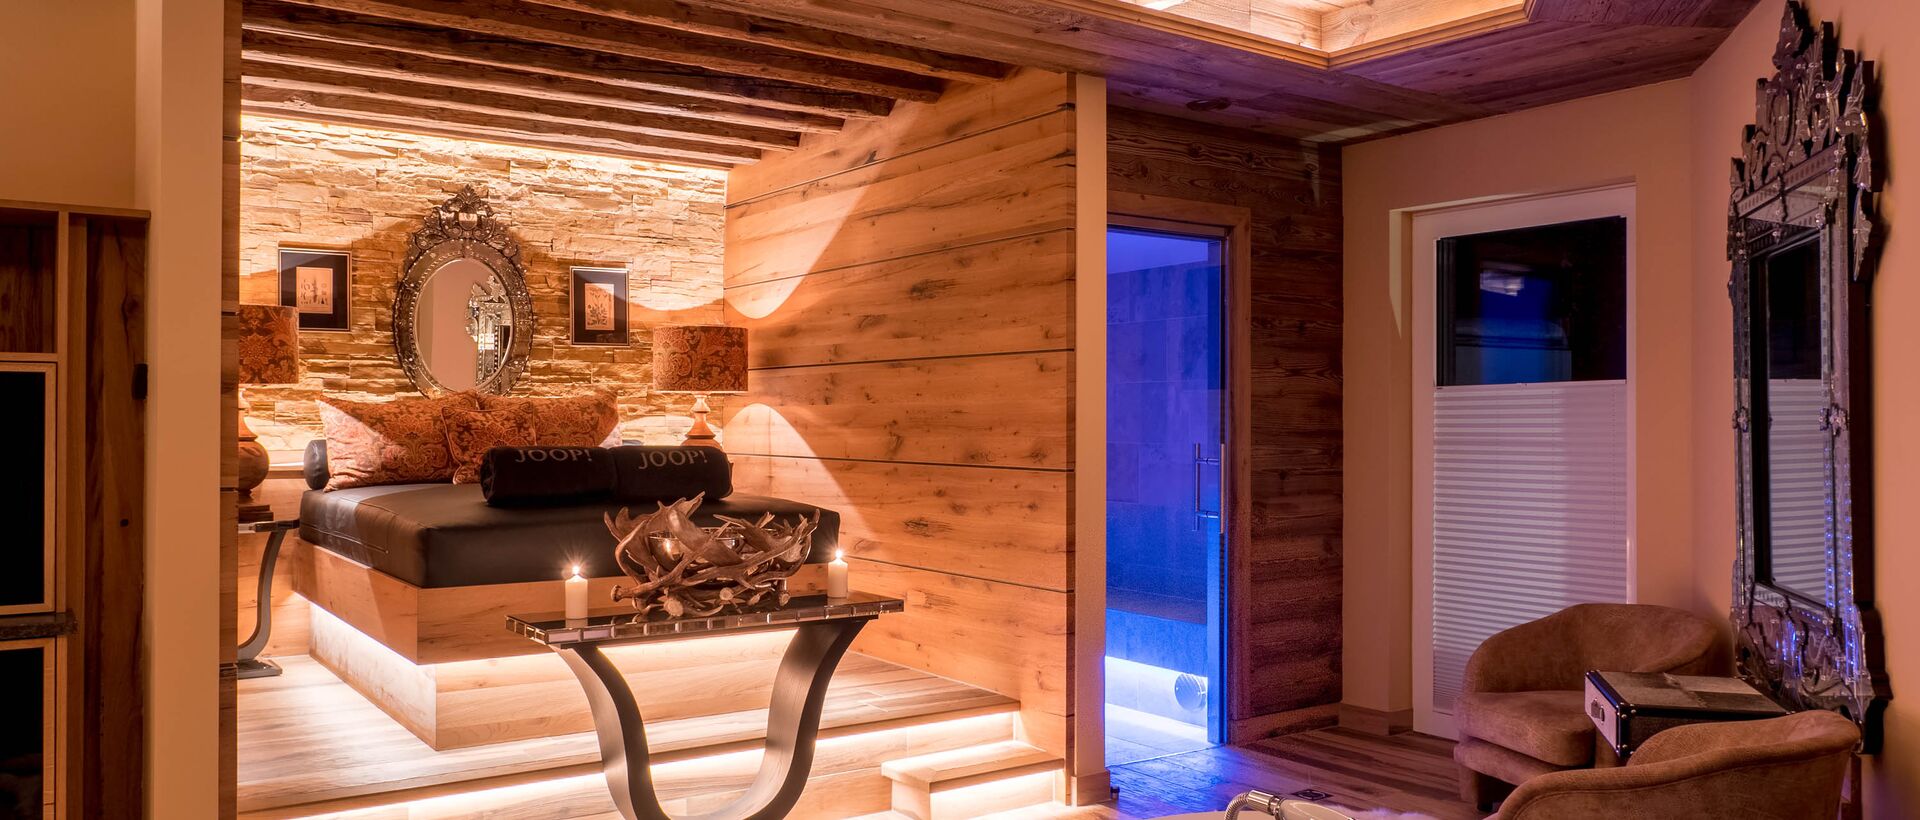 Privater Spa Bereich | Best Alpine Wellnesshotel Alpin Resort Sacher, Tirol 